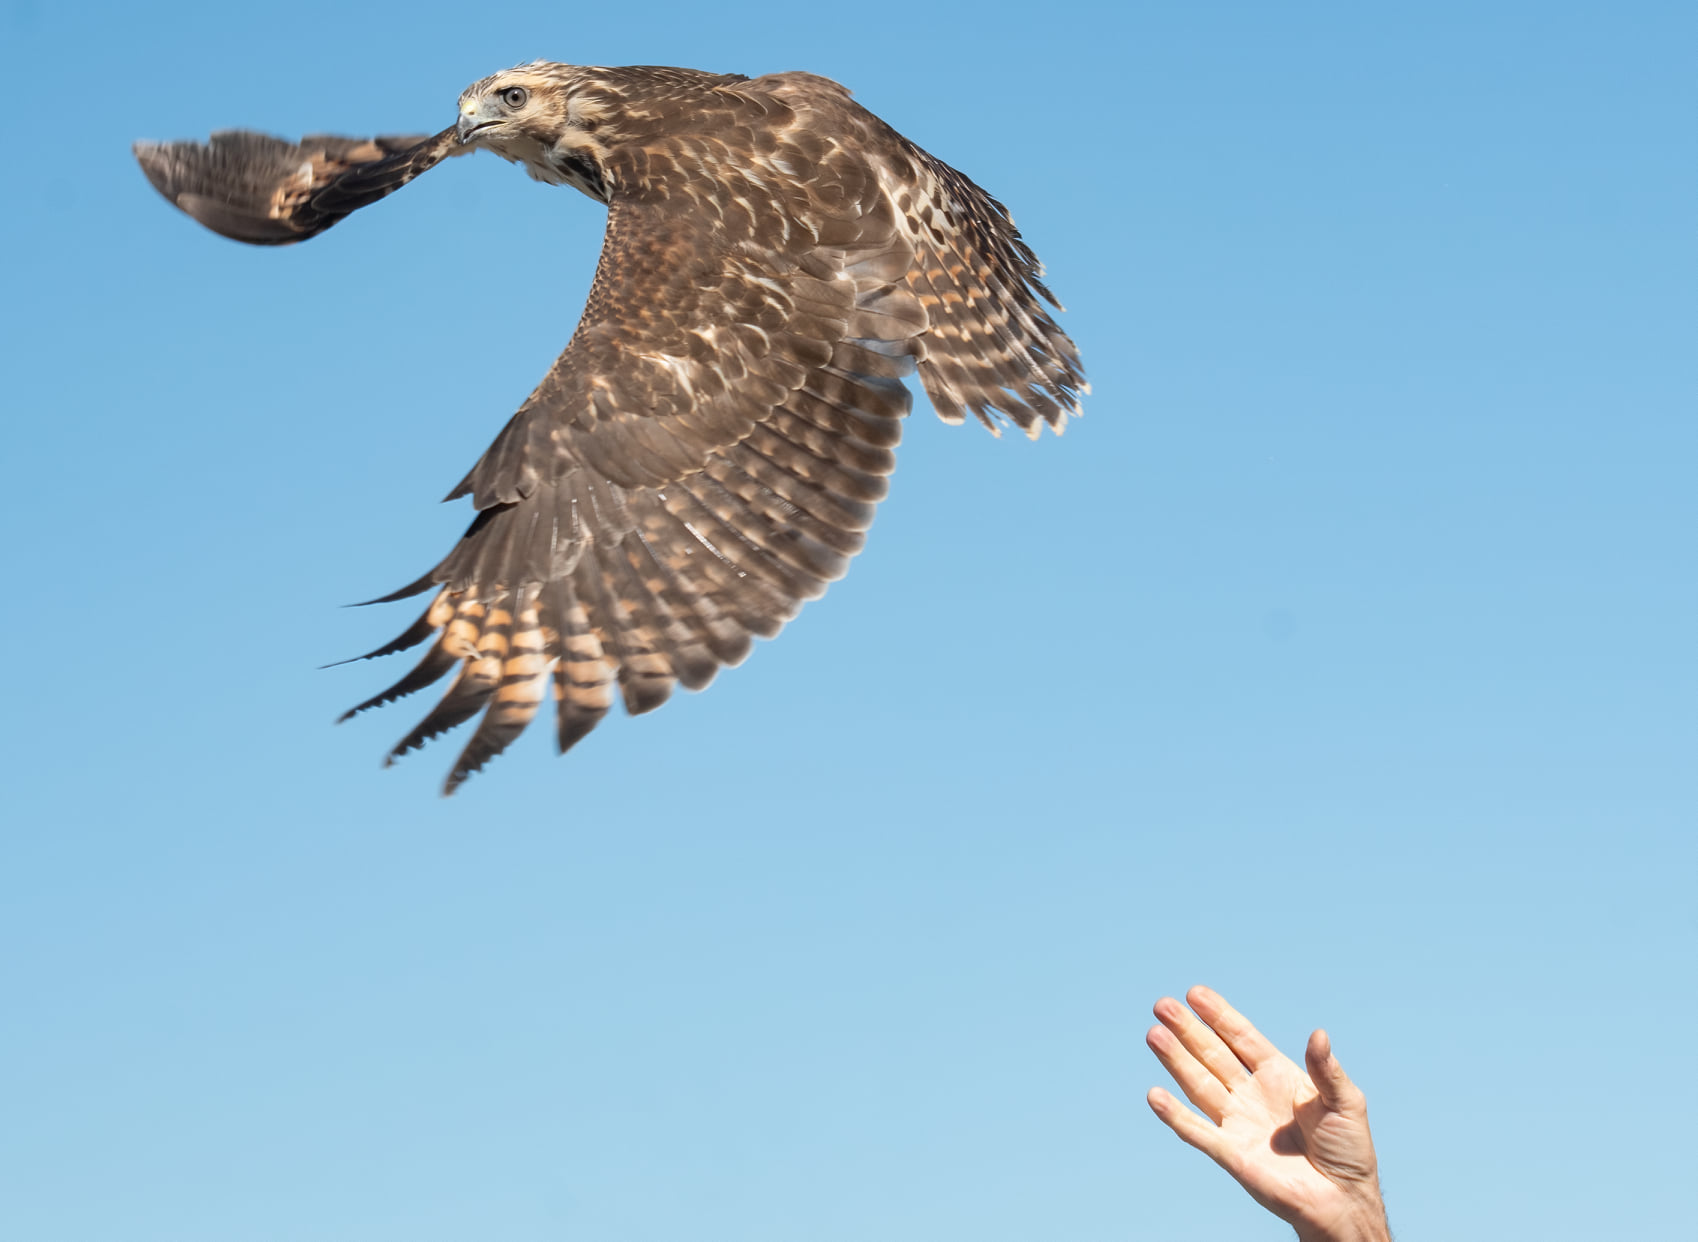 Releasing a broad-winged hawk